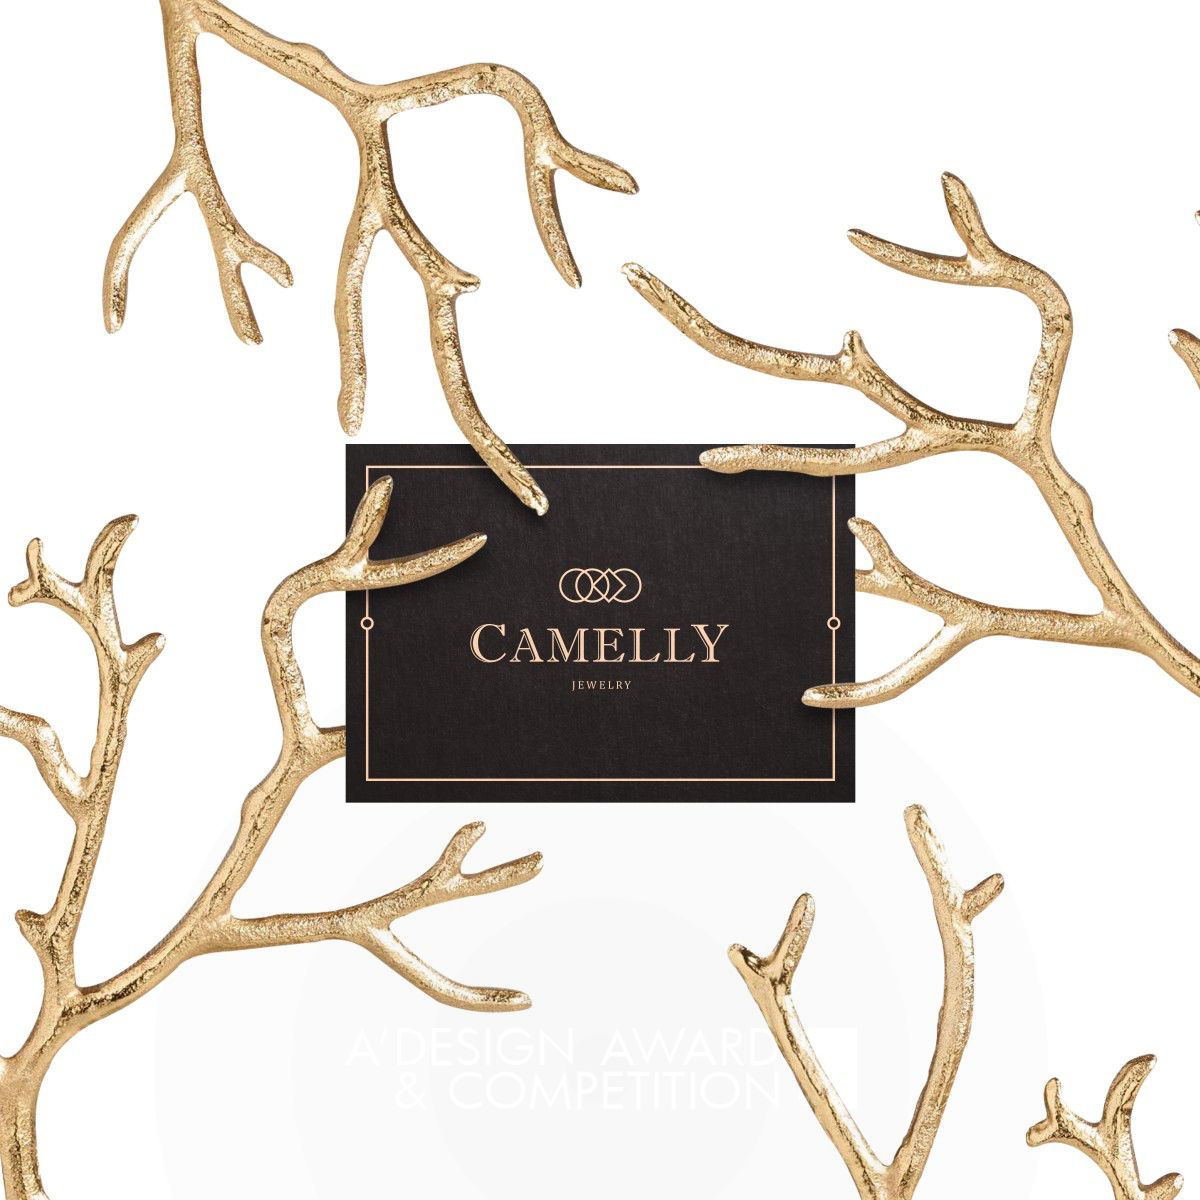 Camelly Jewelry Jewelry branding by Hwanie Choi